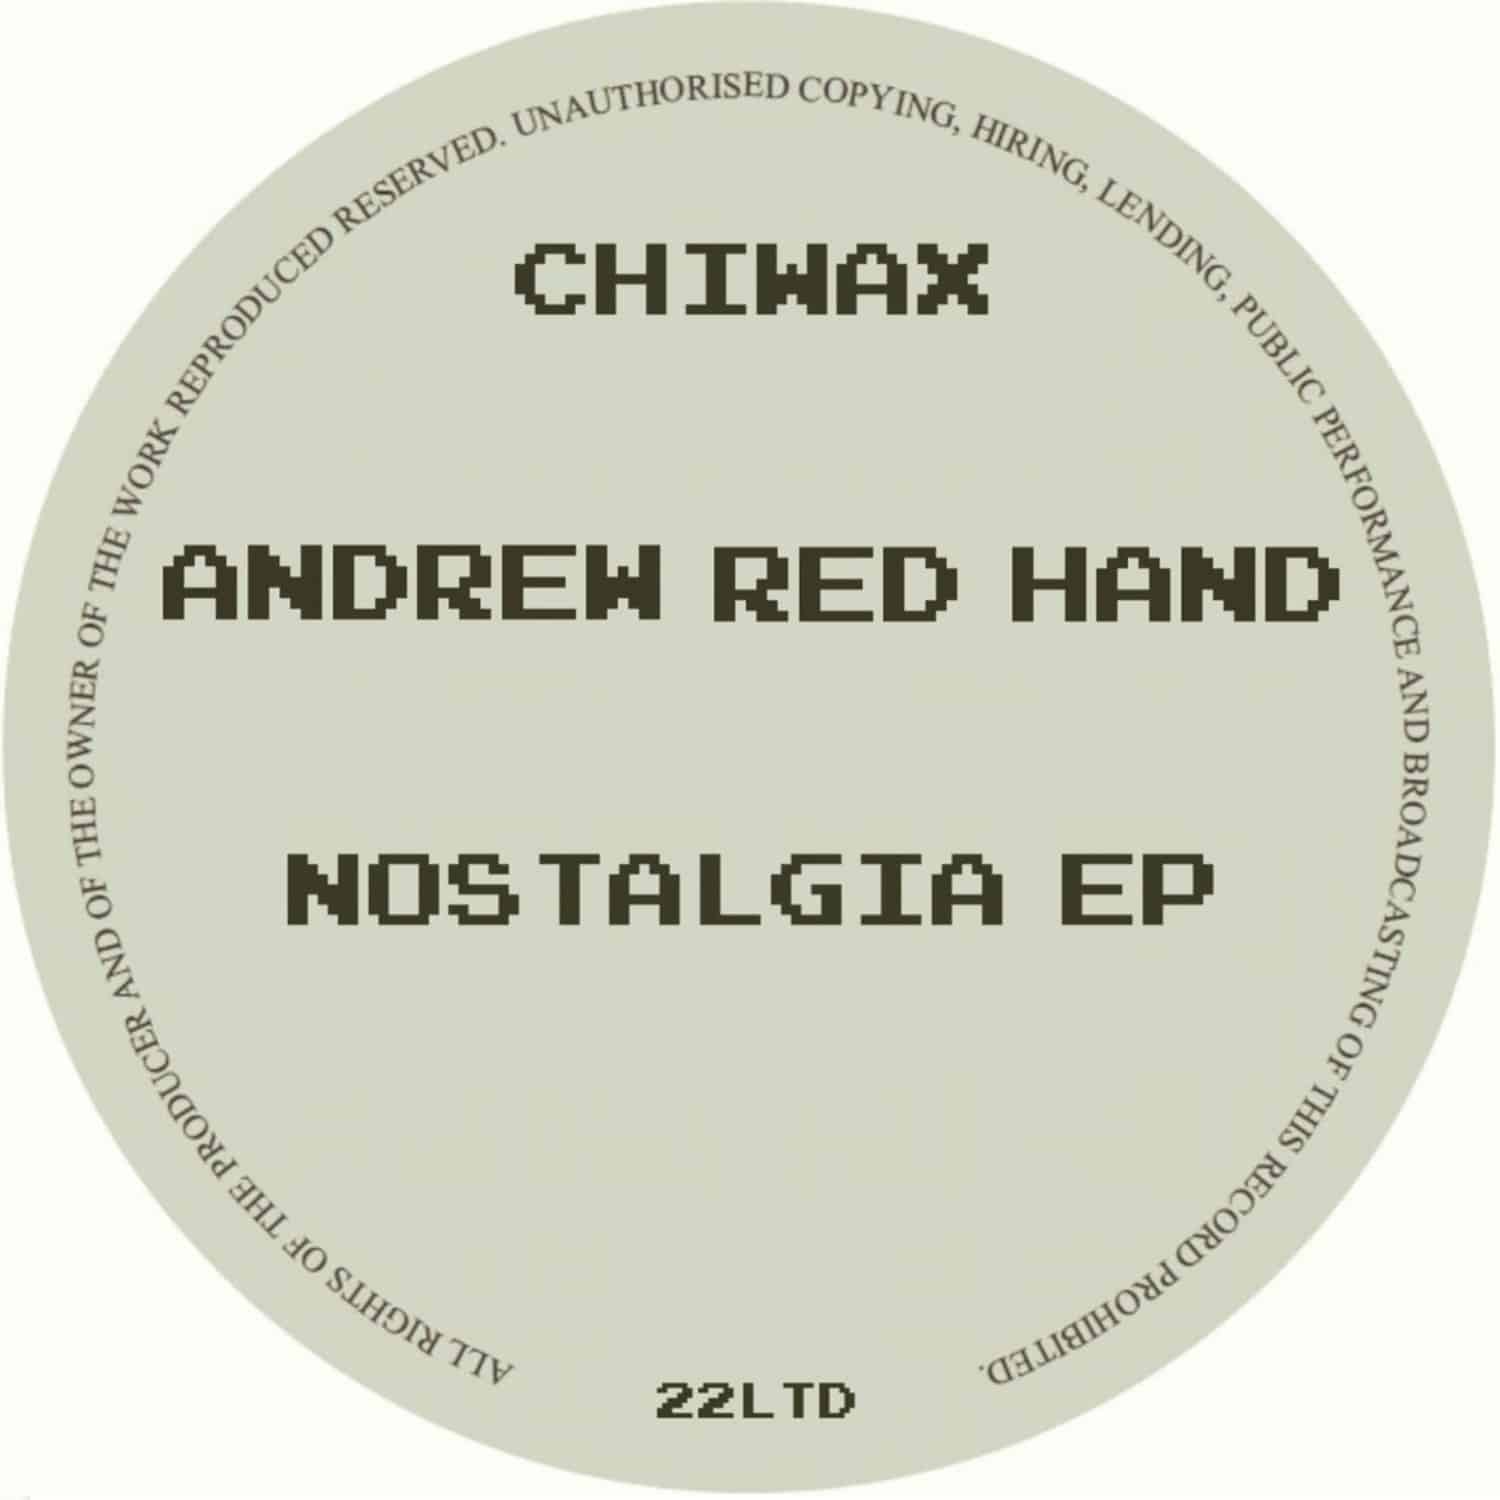 Andrew Red Hand - NOSTALGIA EP